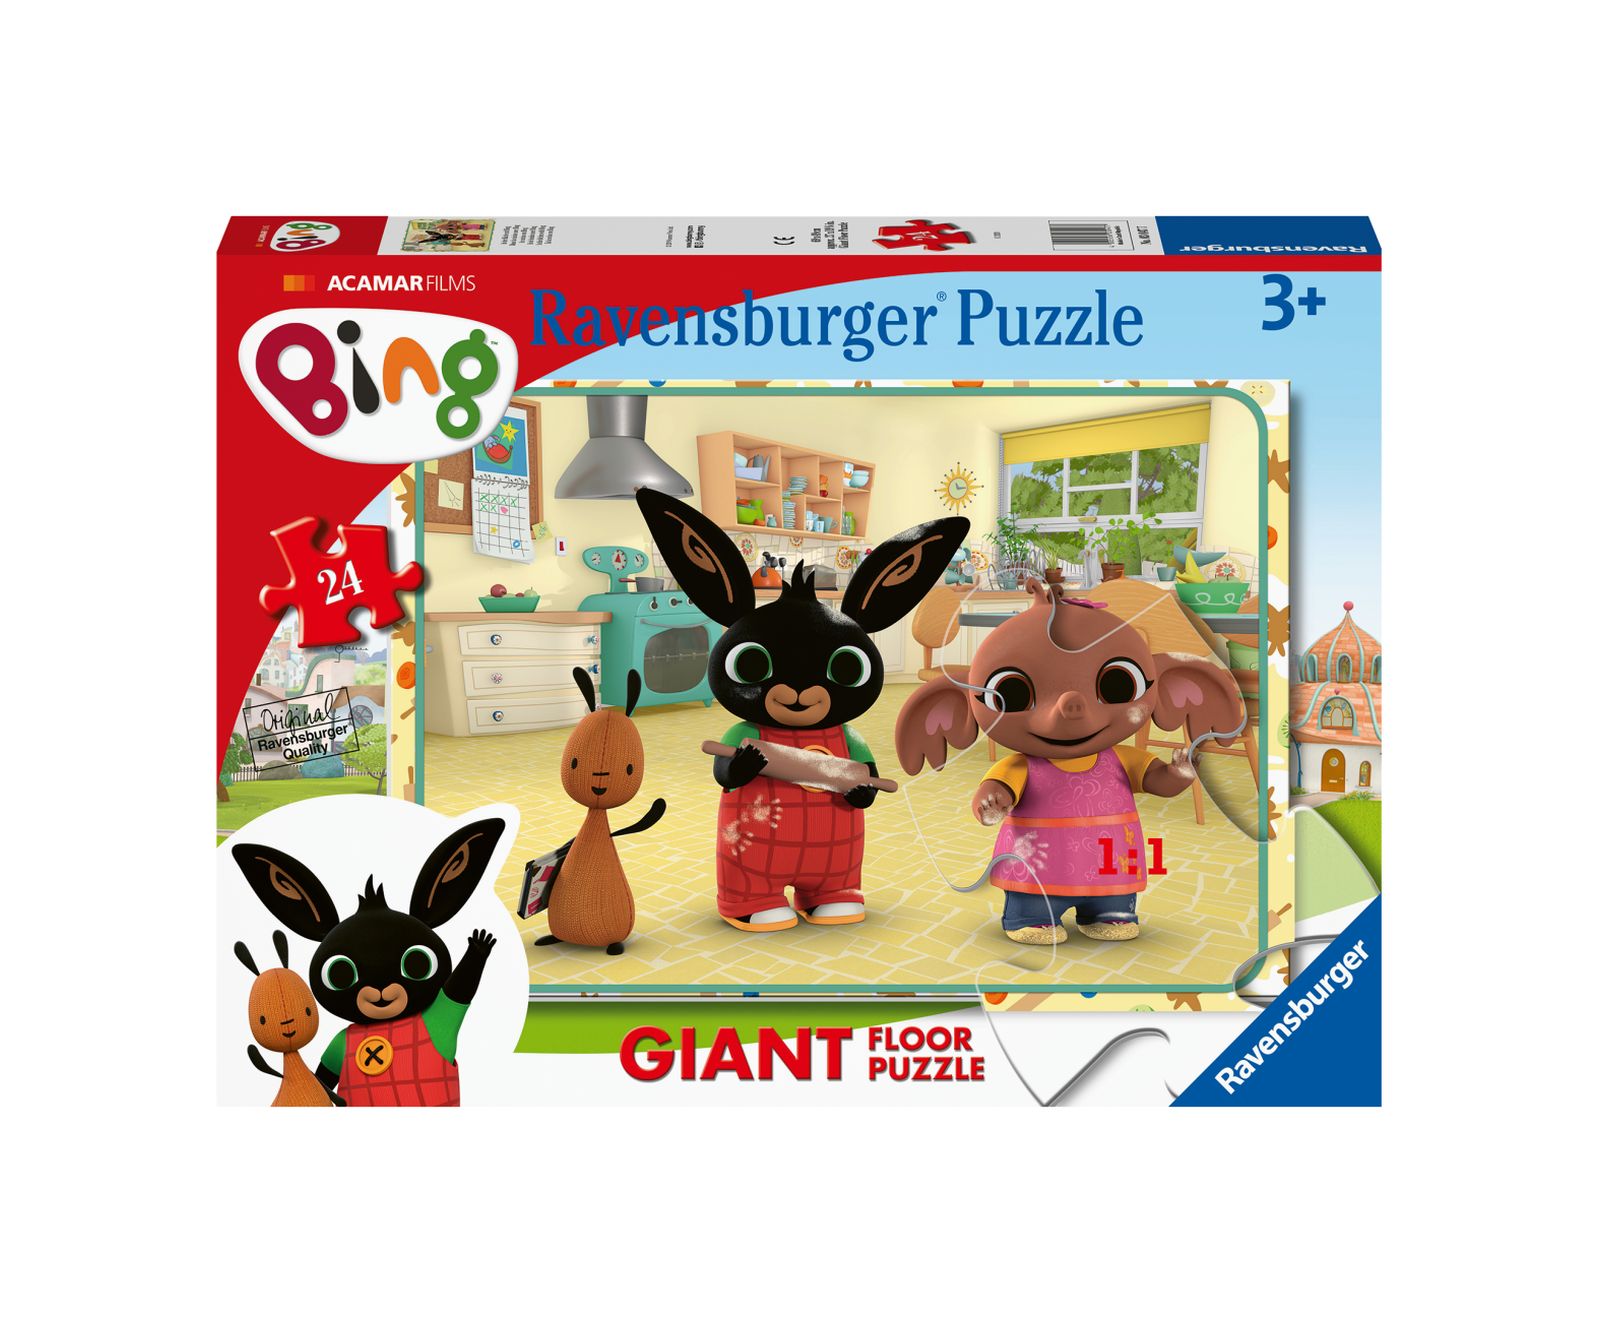 Ravensburger - puzzle 125 pezzi formato giant - per bambini a partire dai 6  anni - spiderman - Toys Center